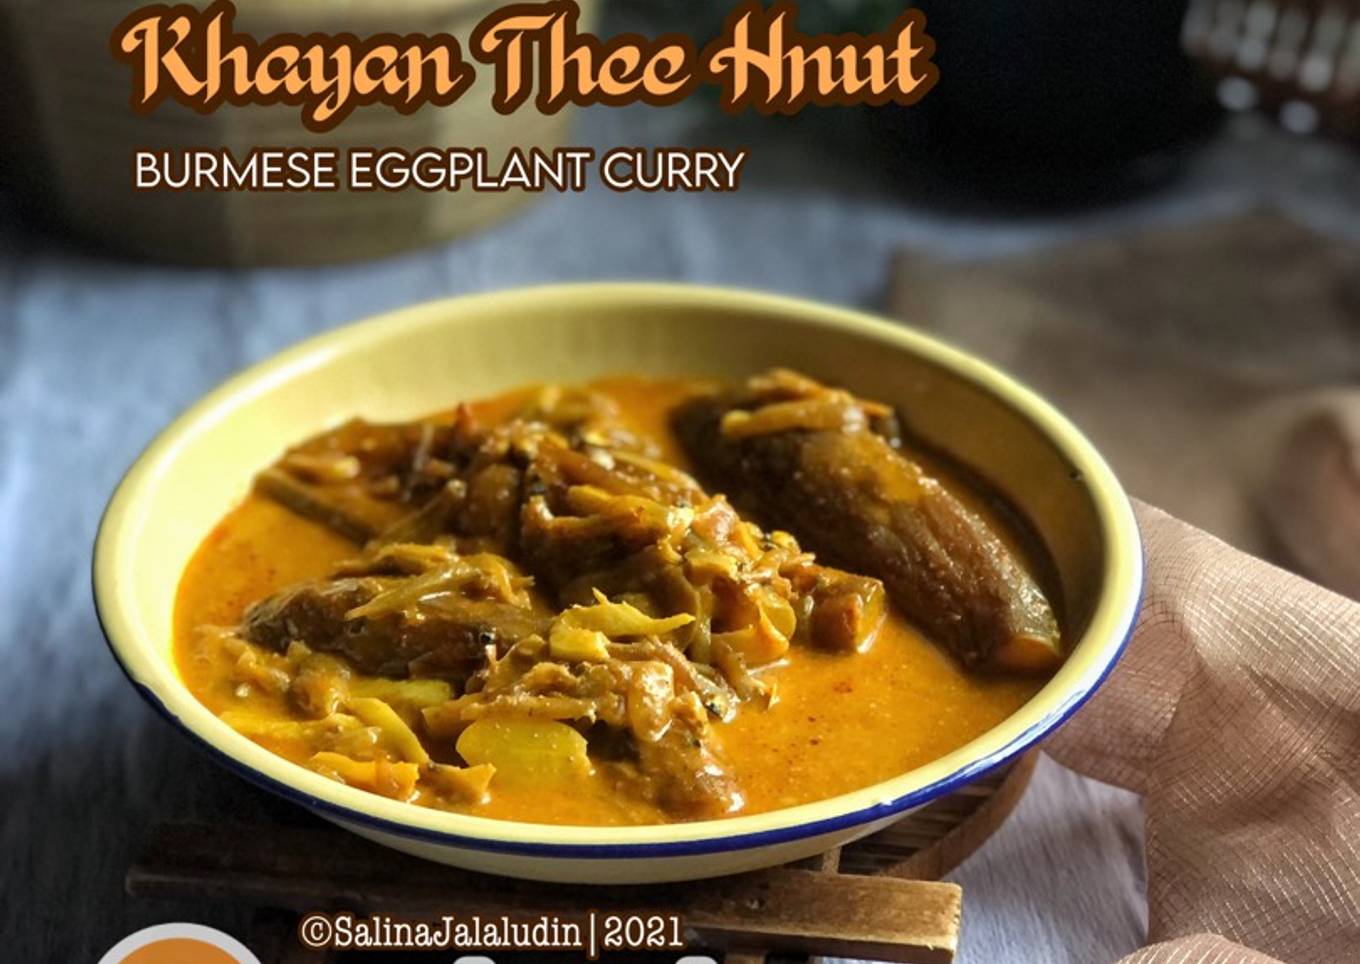 Khayan Thee Hnut (Burmese Eggplant Curry) 🇲🇲